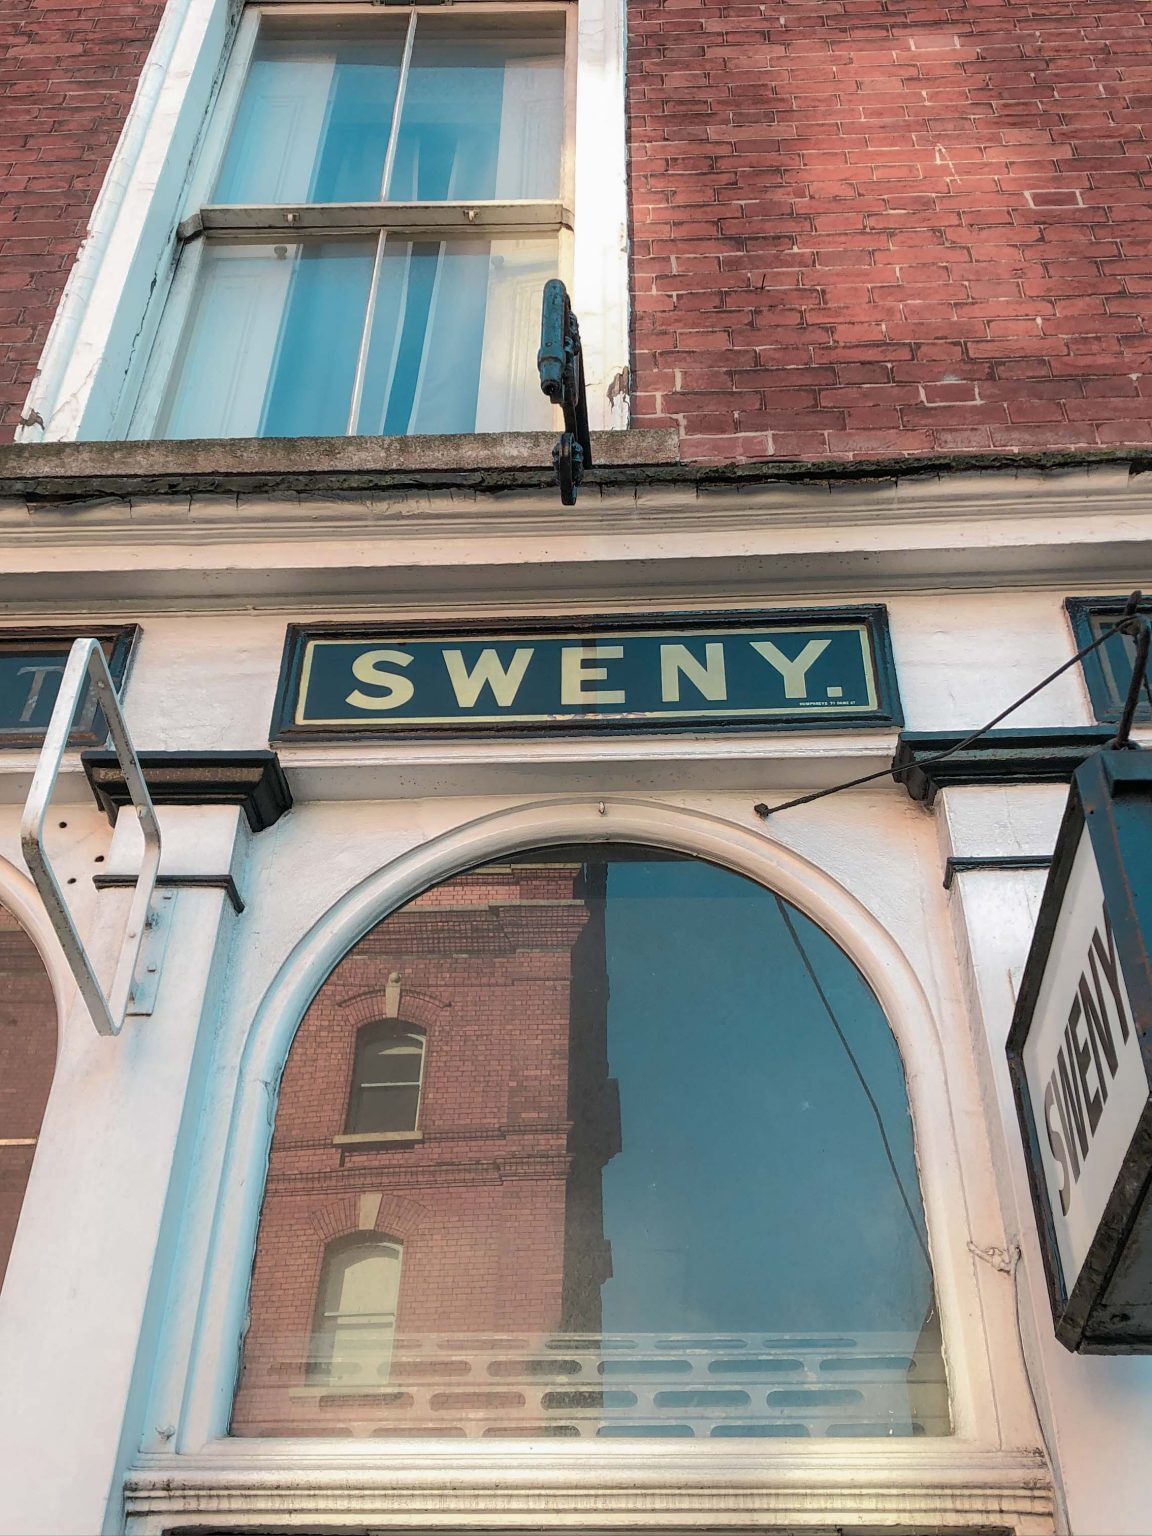 Sweny’s Pharmacy, Merrion Square, Dublin, Ireland